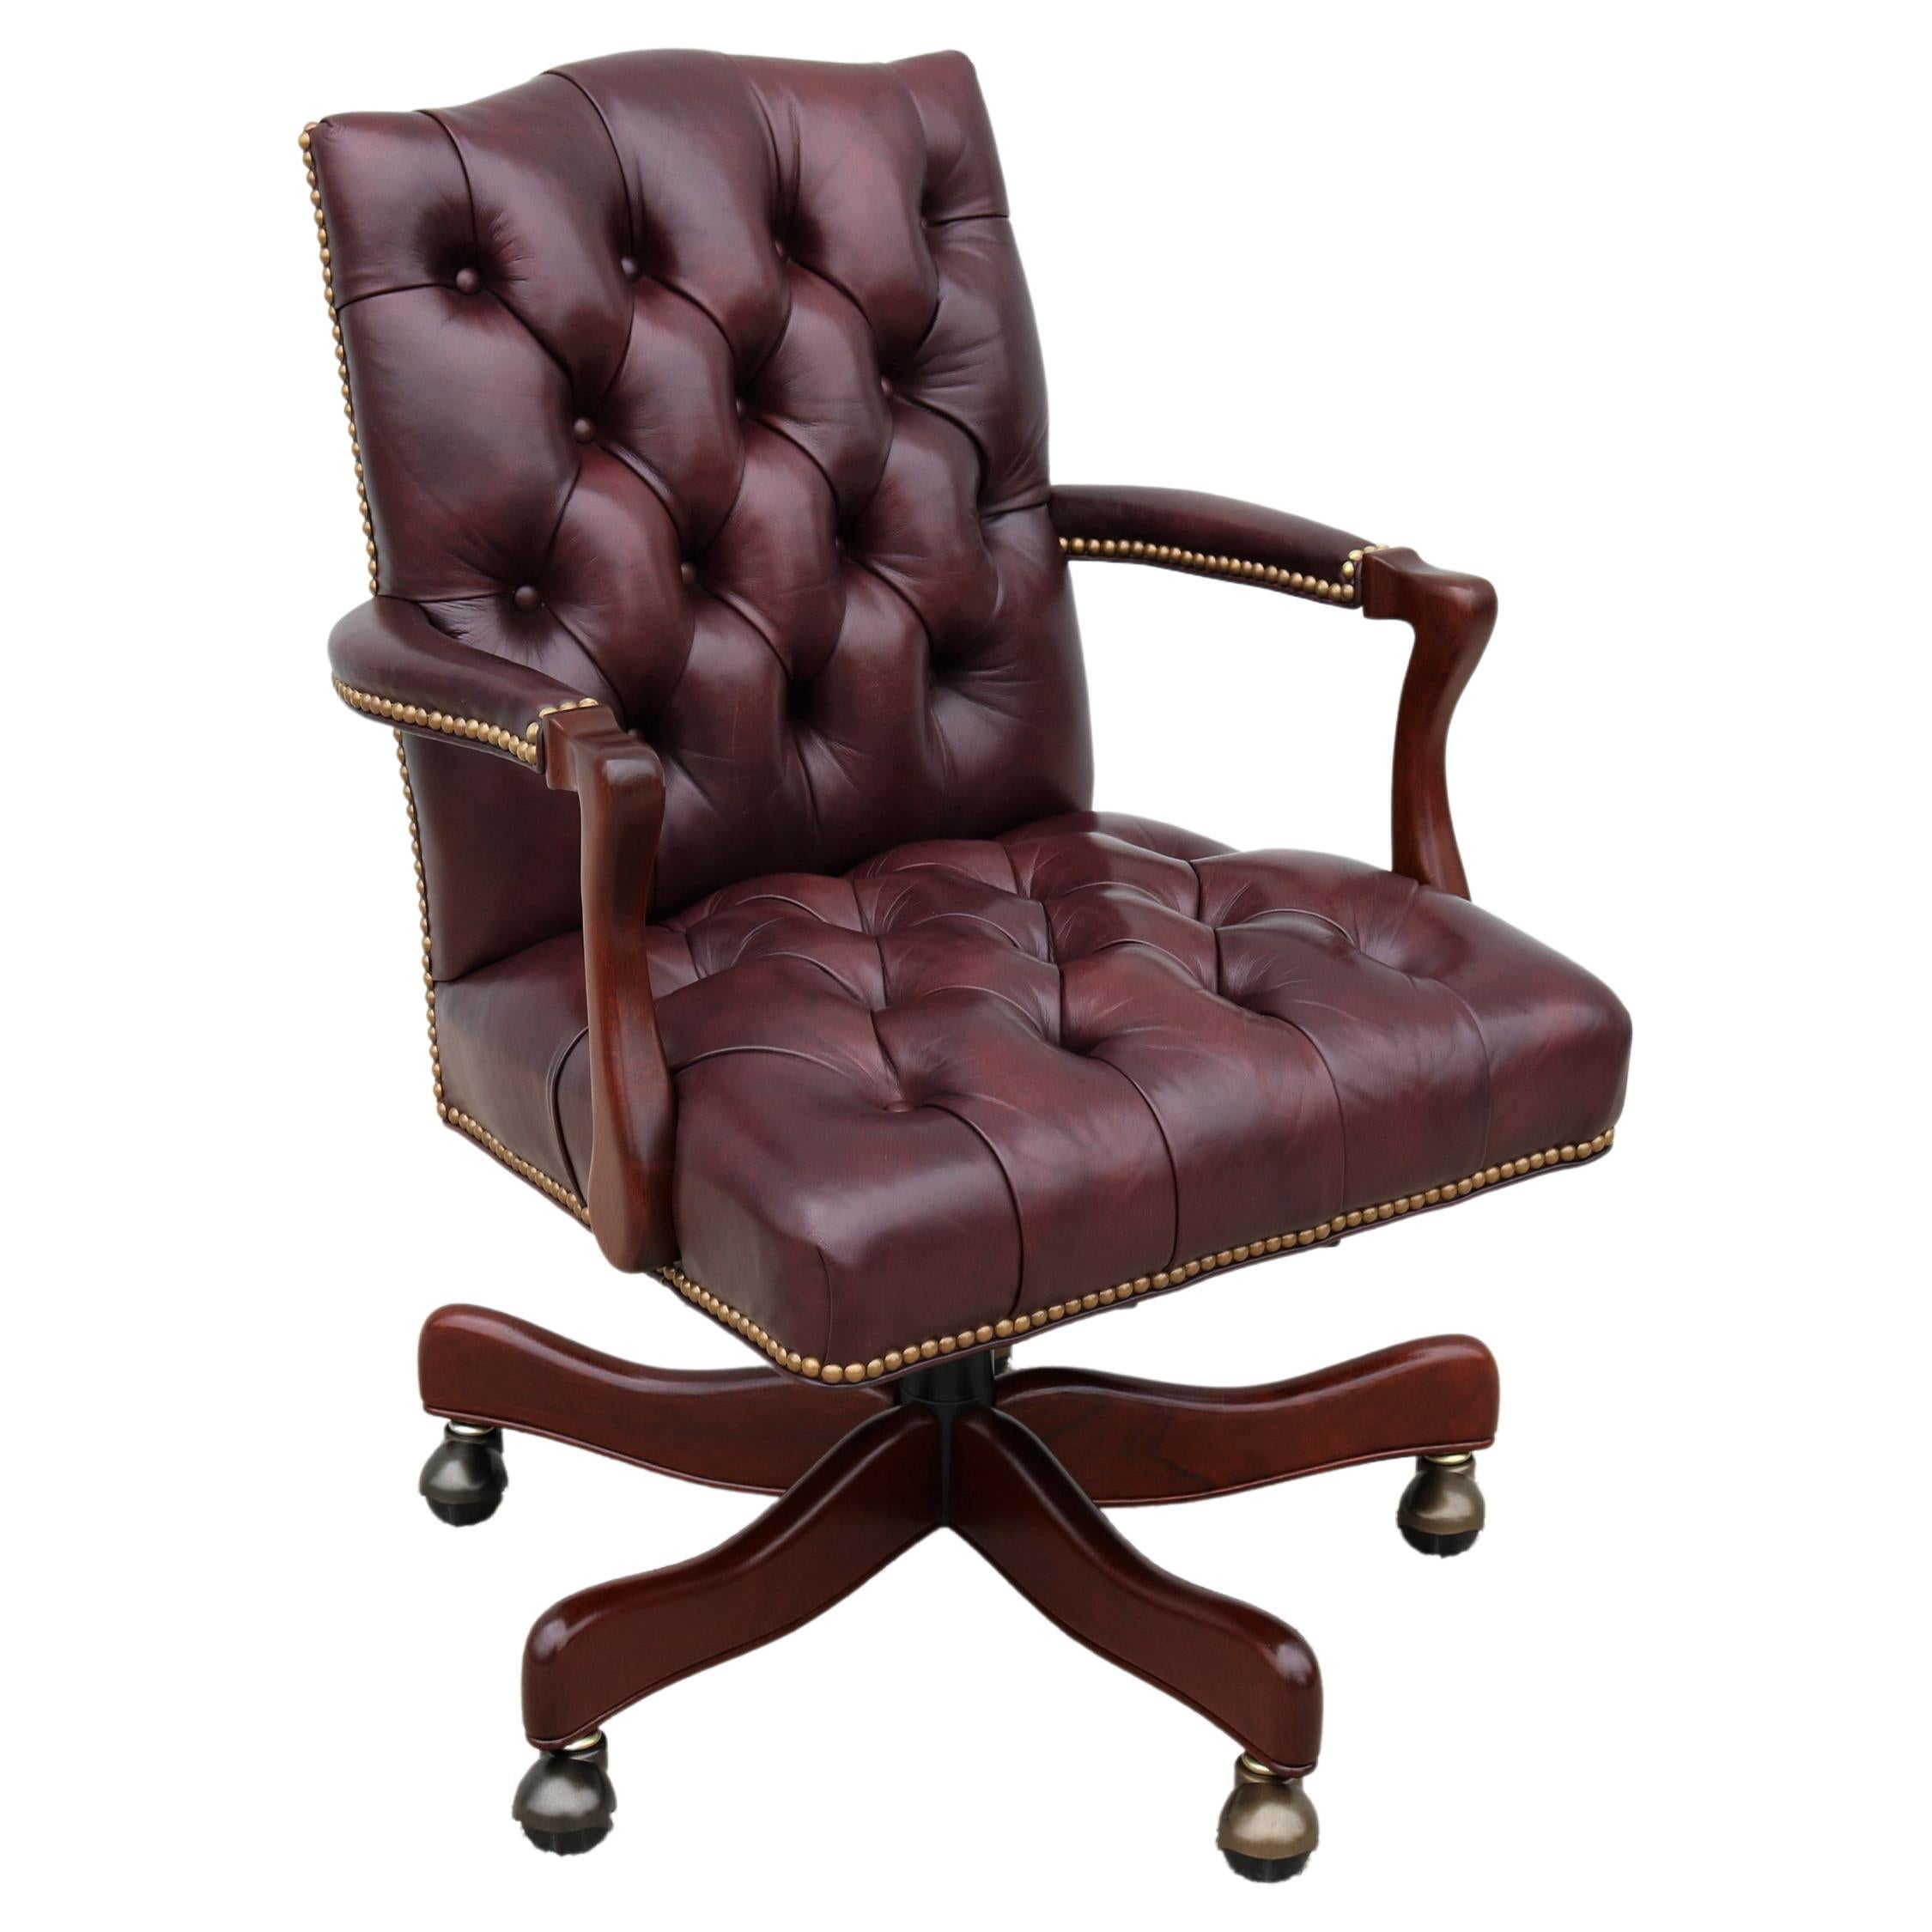 Classic Cabot Wrenn Graham, fauteuil de bureau de direction en cuir bourgogne touffeté